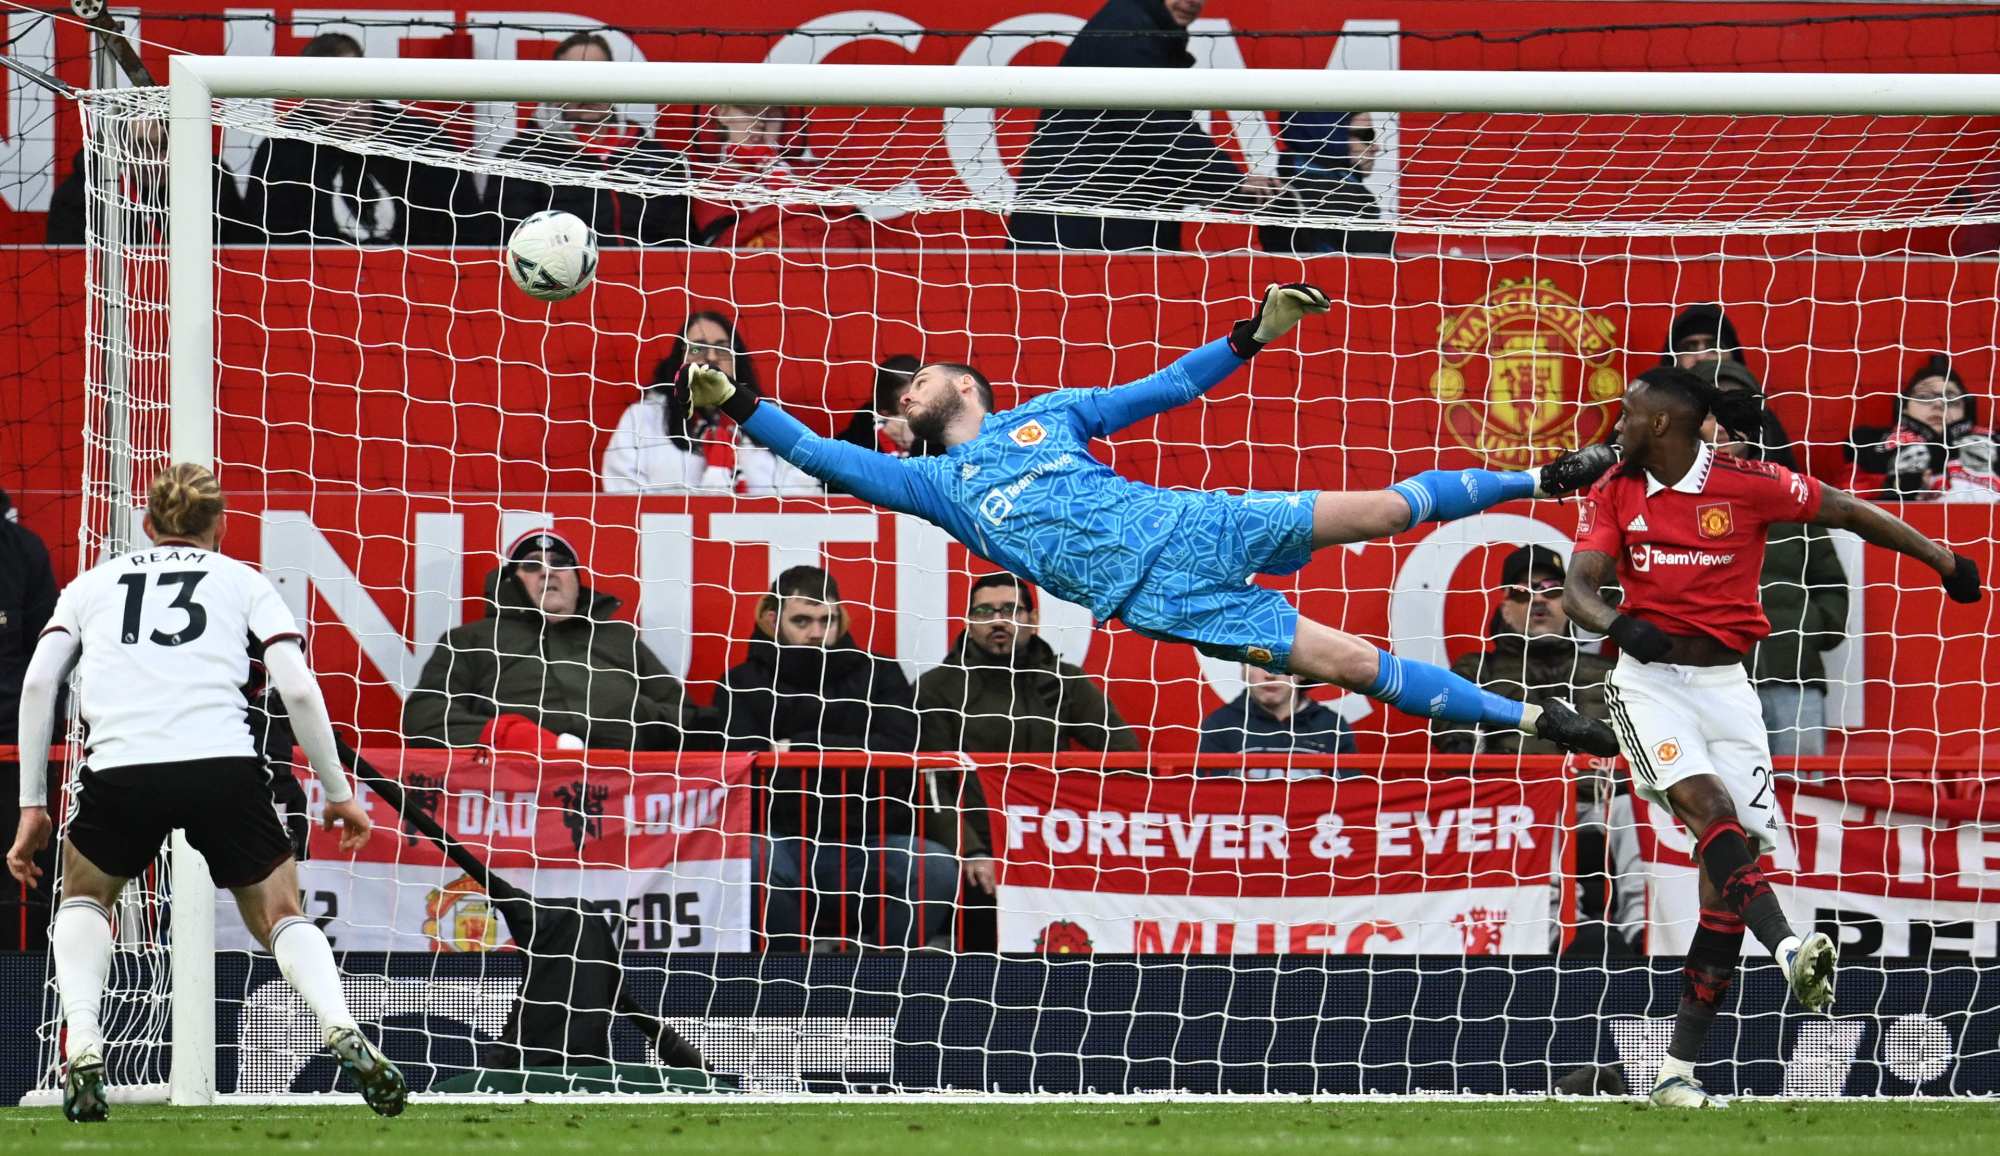 Premier League - Manchester United: De gea's 11 saves at wembley